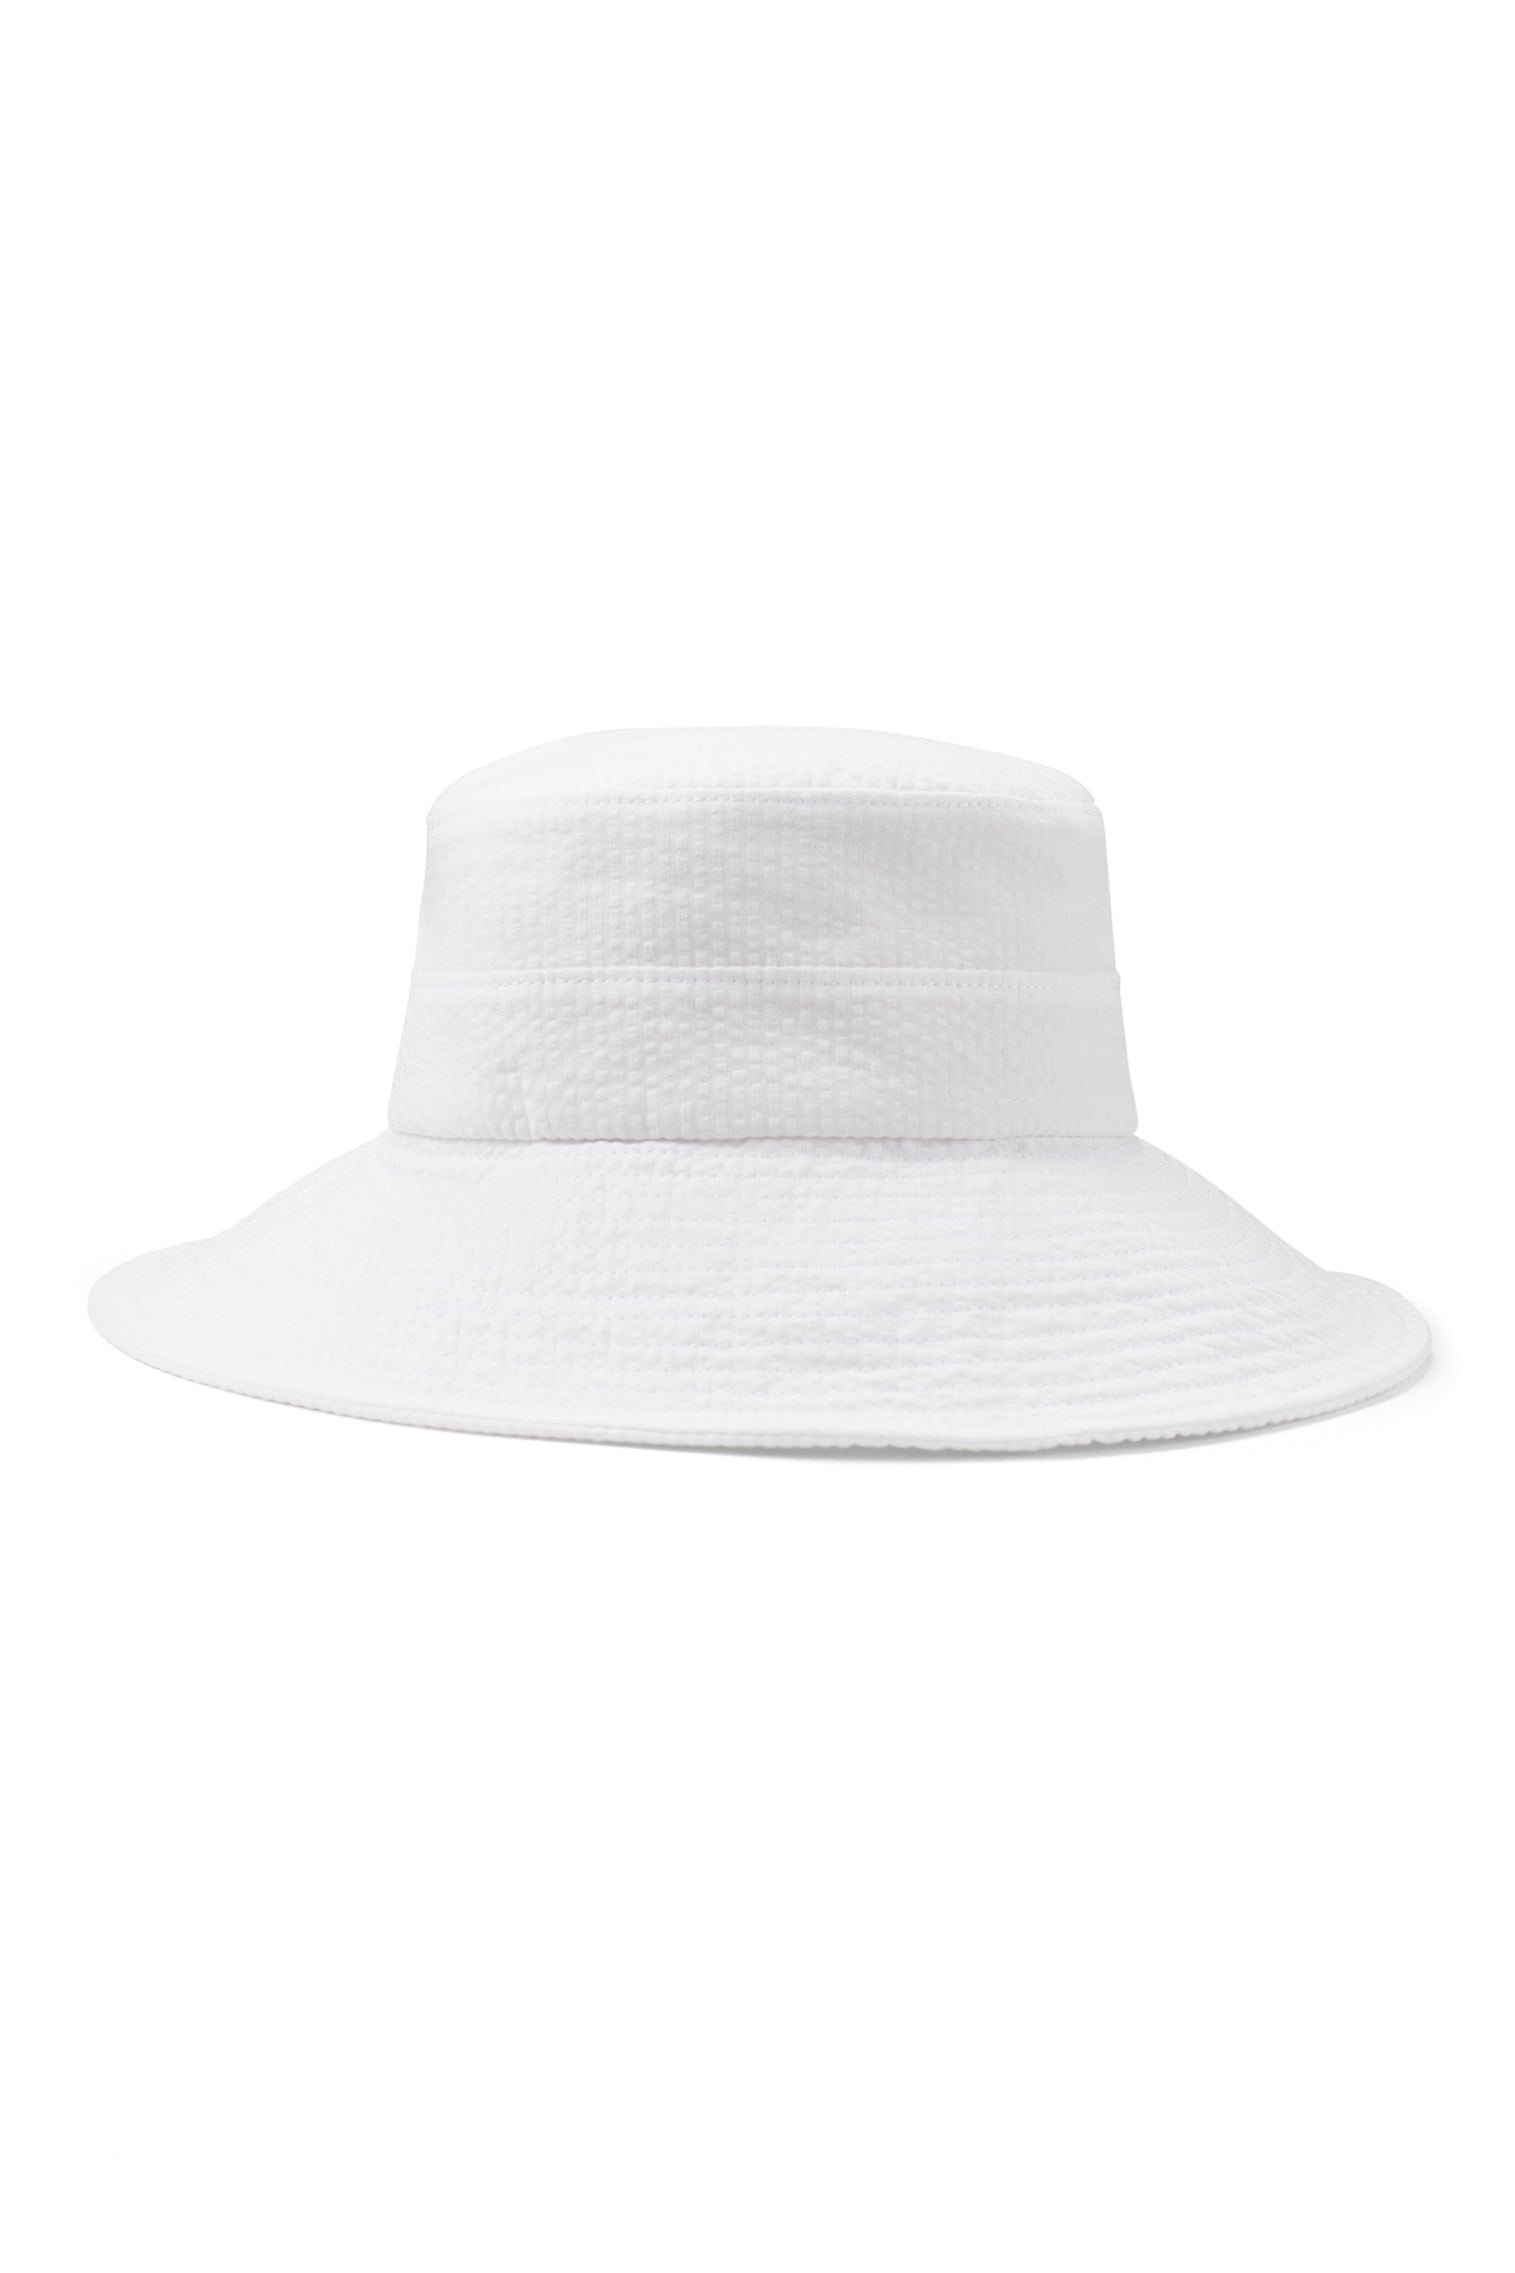 Margot Seersucker Sun Hat - Products - Lock & Co. Hatters London UK